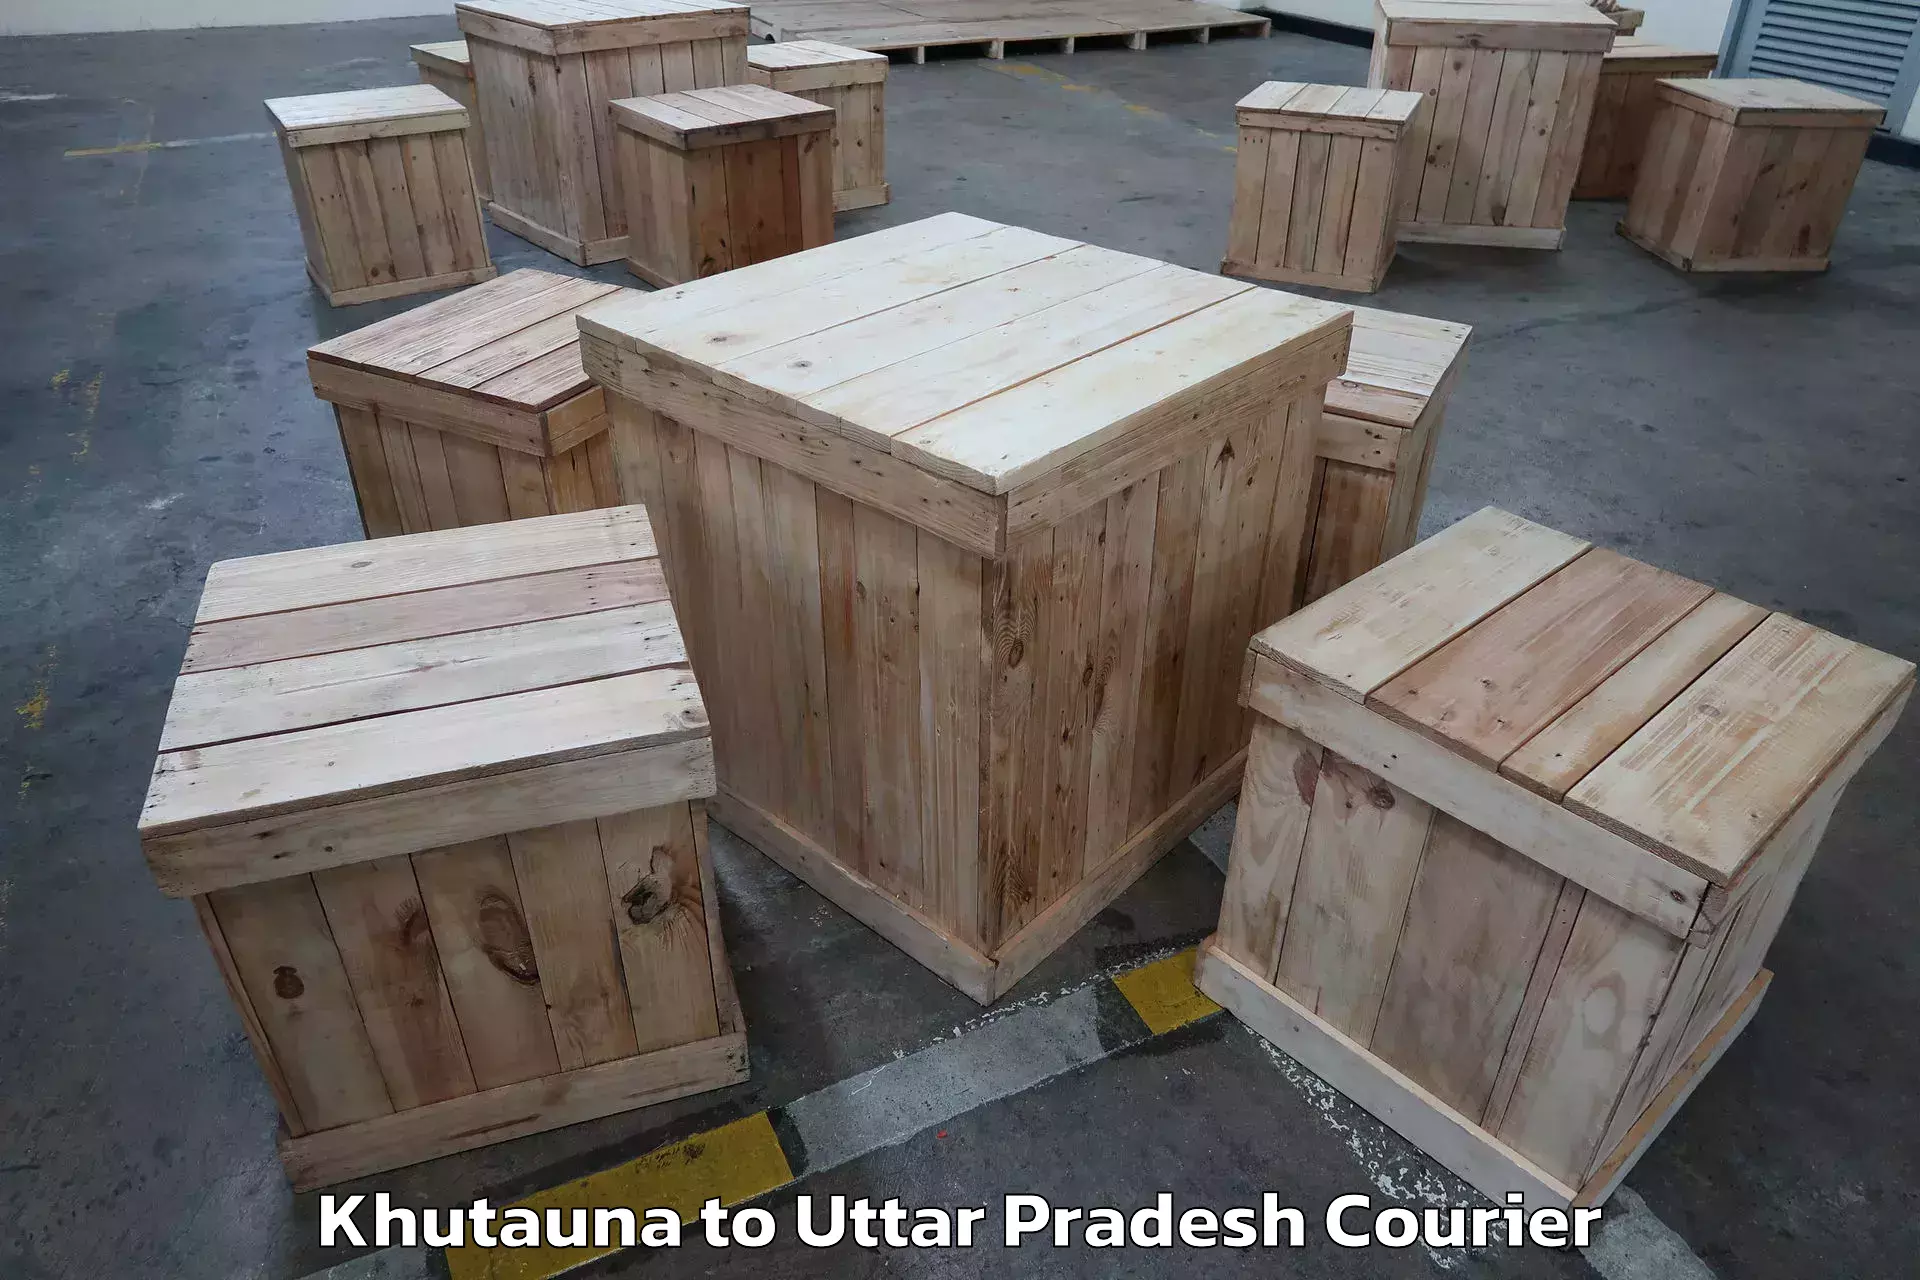 Trusted moving company Khutauna to Kannauj